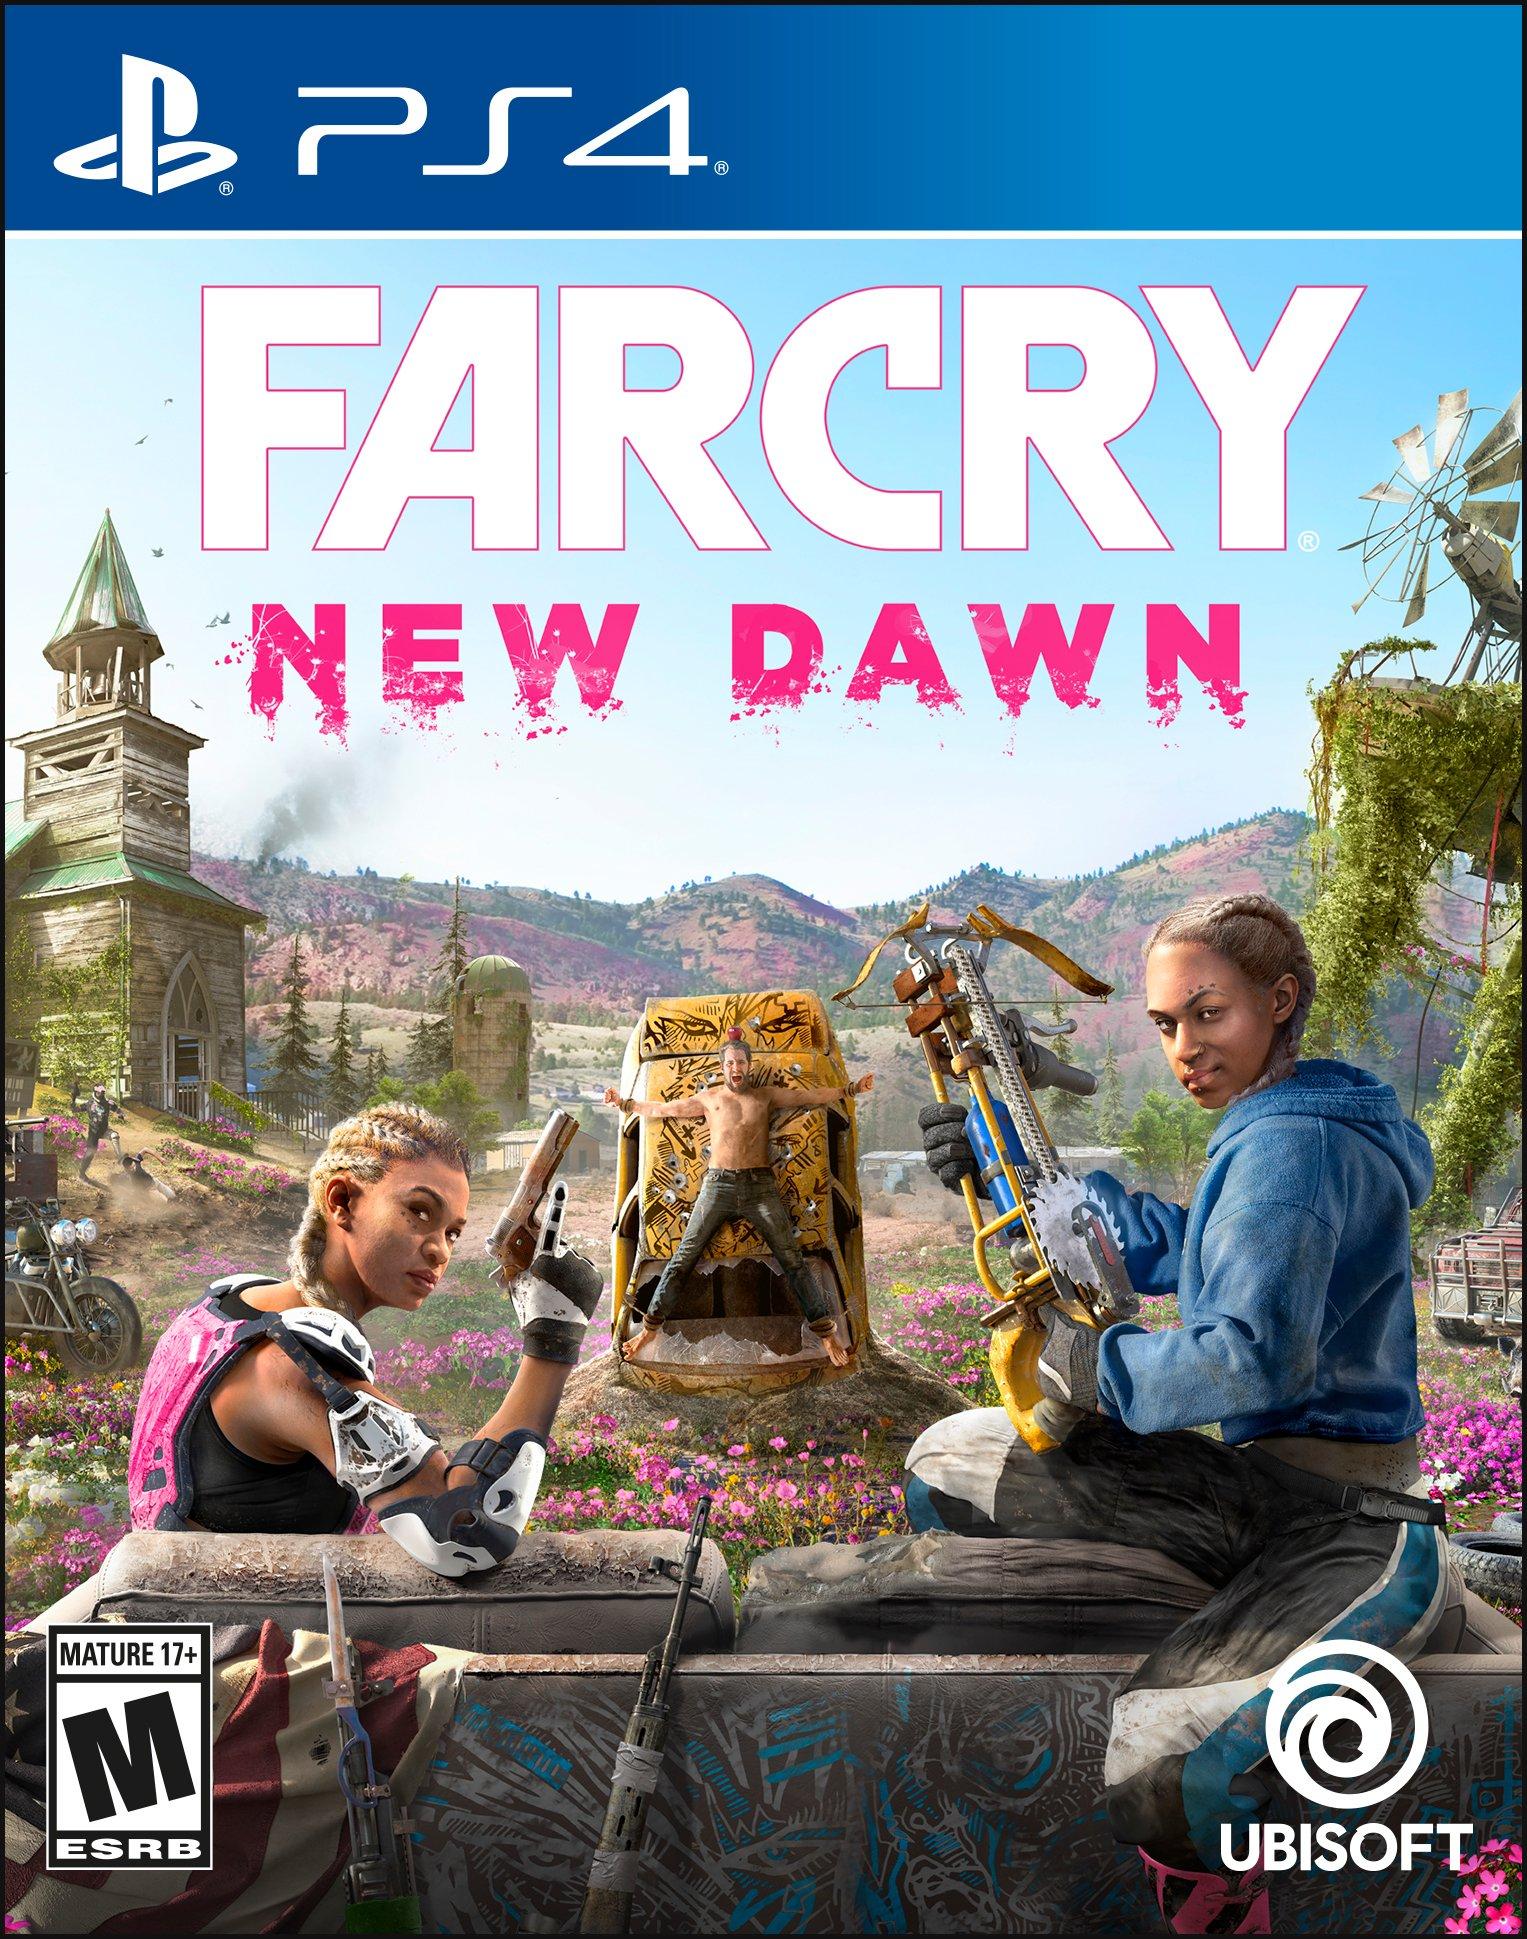 Far Cry® 5 + Far Cry® New Dawn Ultimate Edition